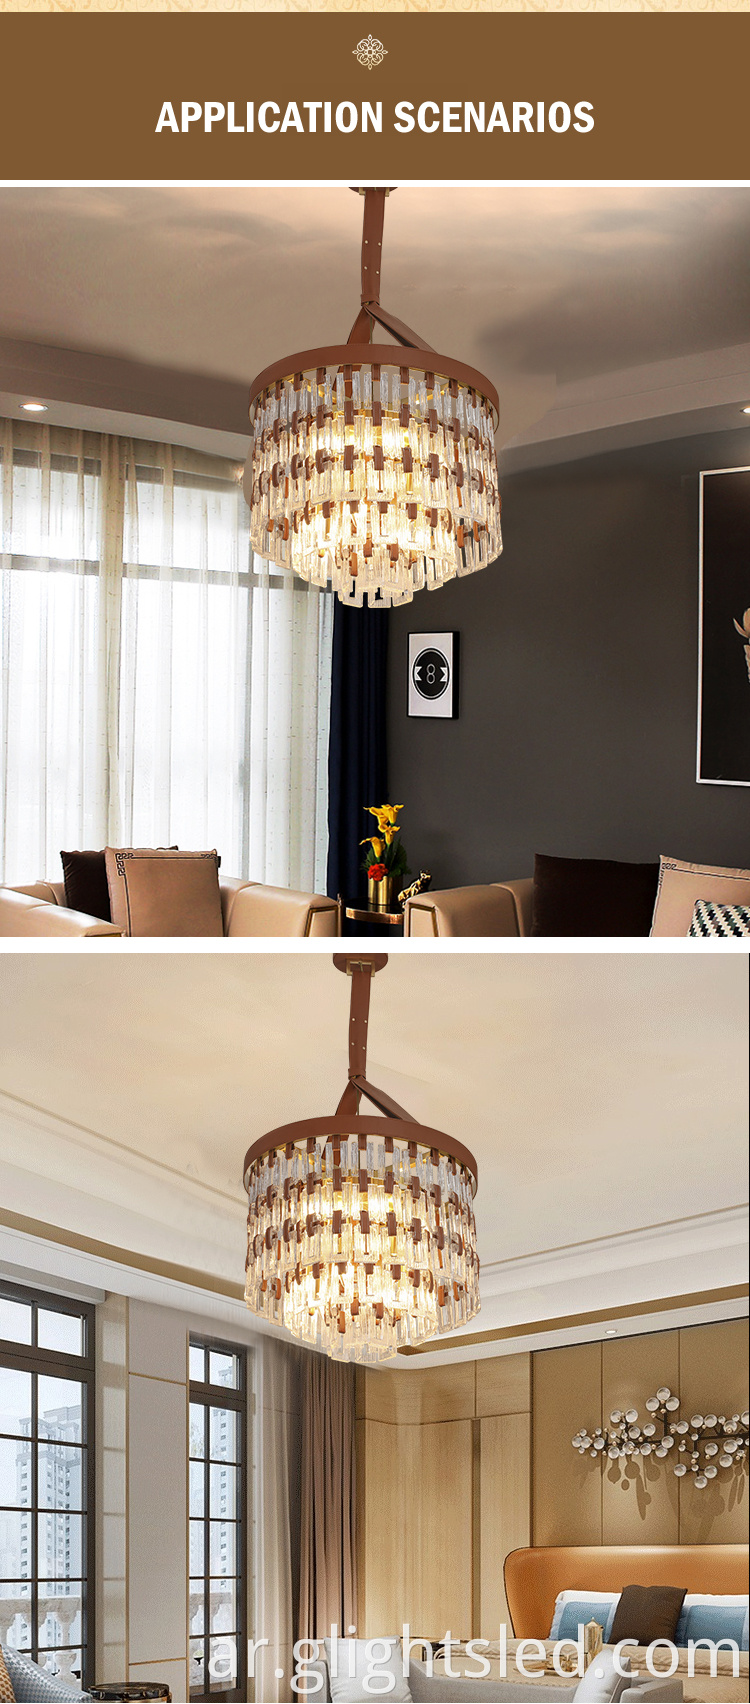 G-Lights منتج جديد حديث مصمم داخلي غرفة المعيشة فندق زجاجي LED قلادة الثريا الخفيفة